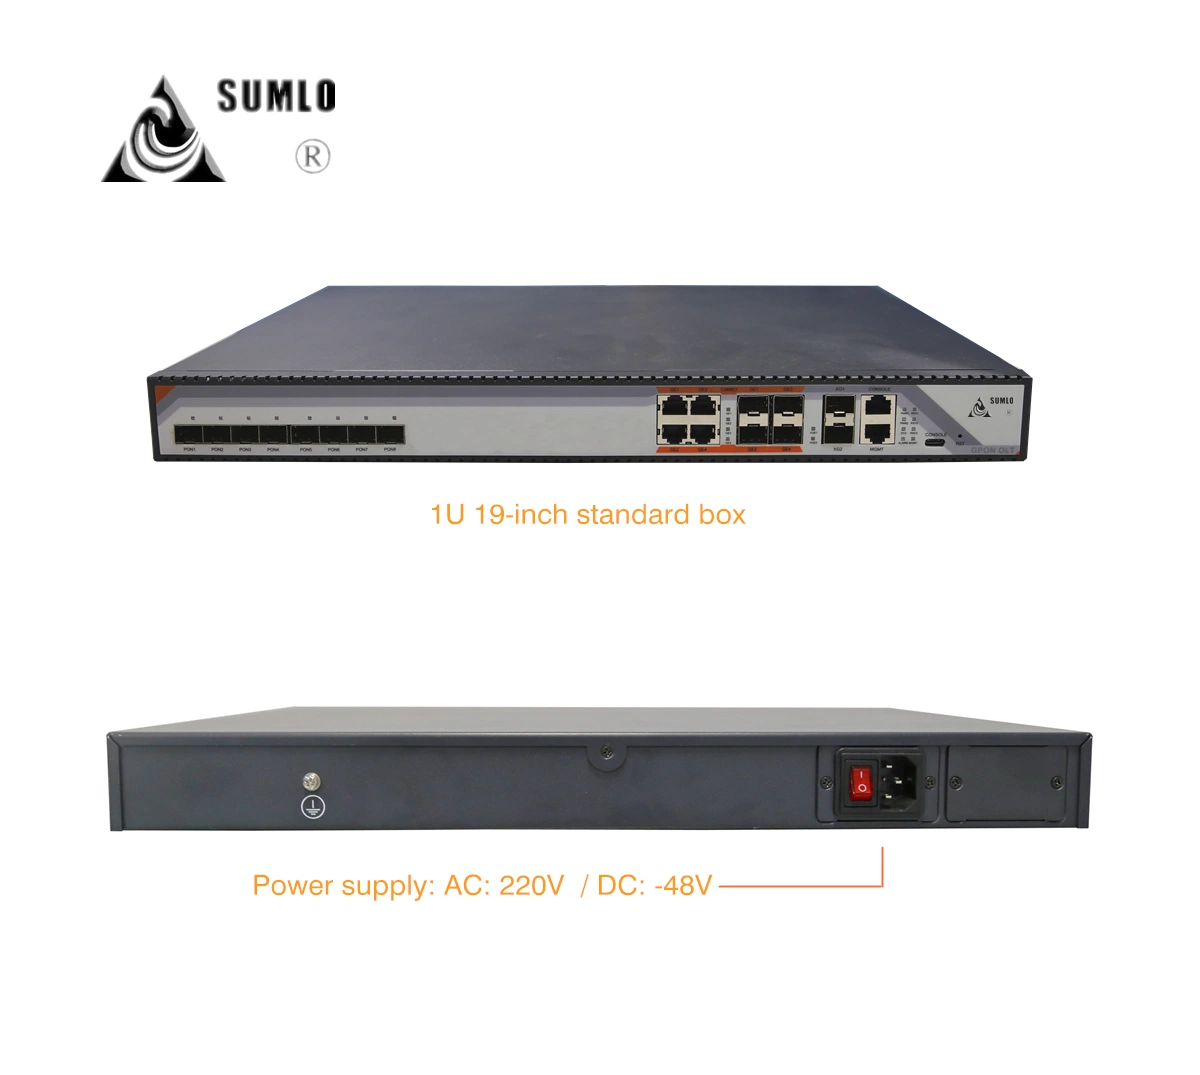 Gpon Olt Pon 8 puertos, 4 interfaces SFP, 4 puertos 10/100/1000m, 2 puertos Ethernet Gigabit de enlace ascendente de 10 Sep+ puertos, fuente de alimentación DC/AC